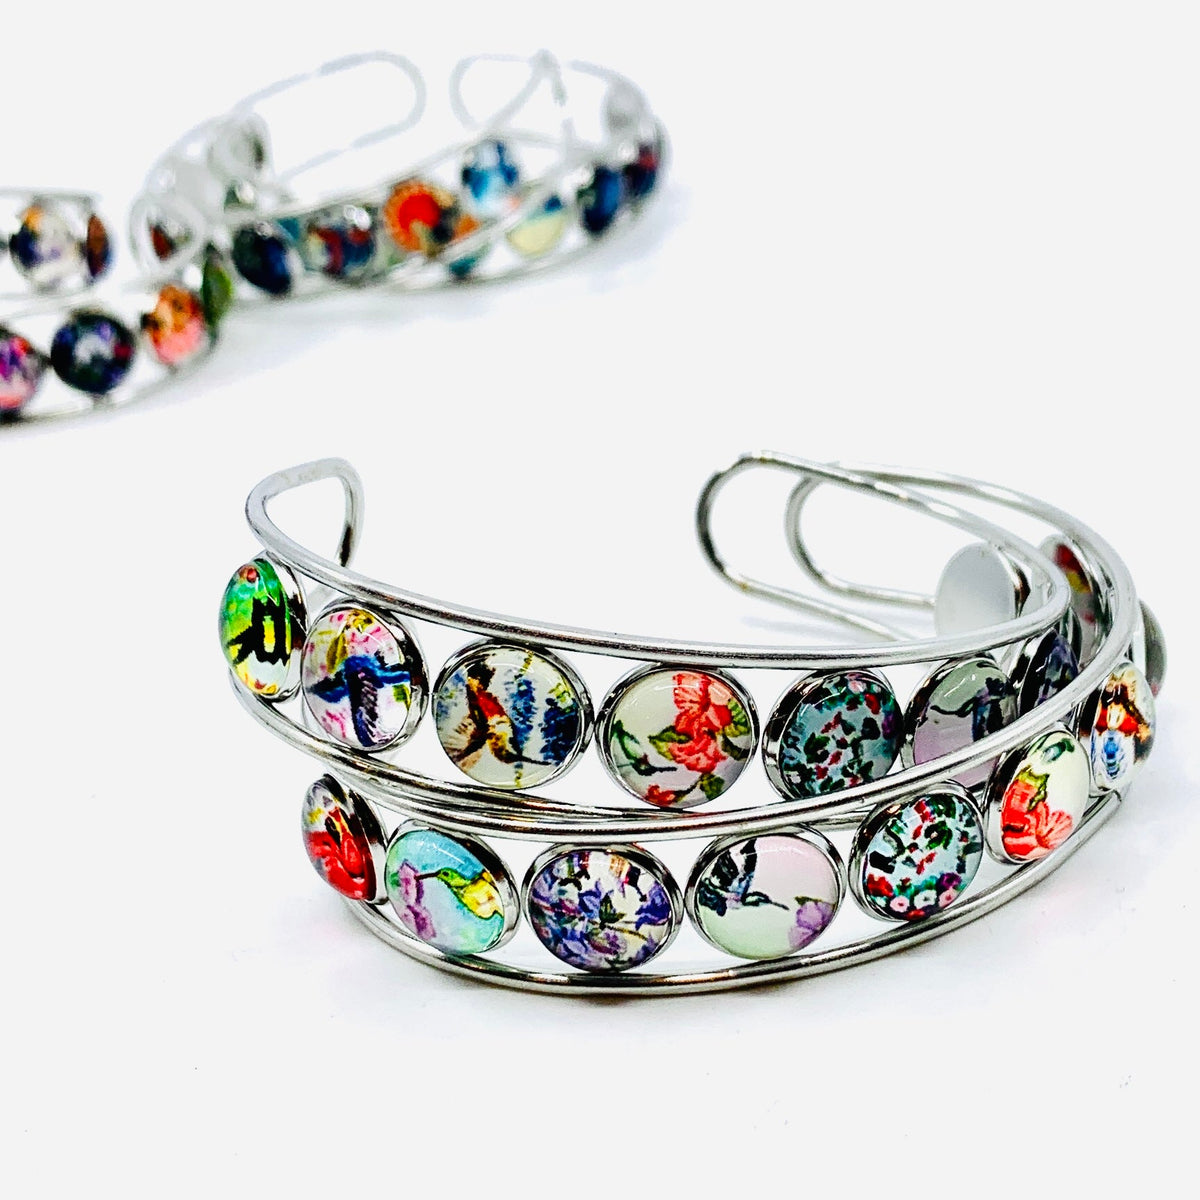 Artistic Cuff Bracelet Jewelry - Hummingbird 